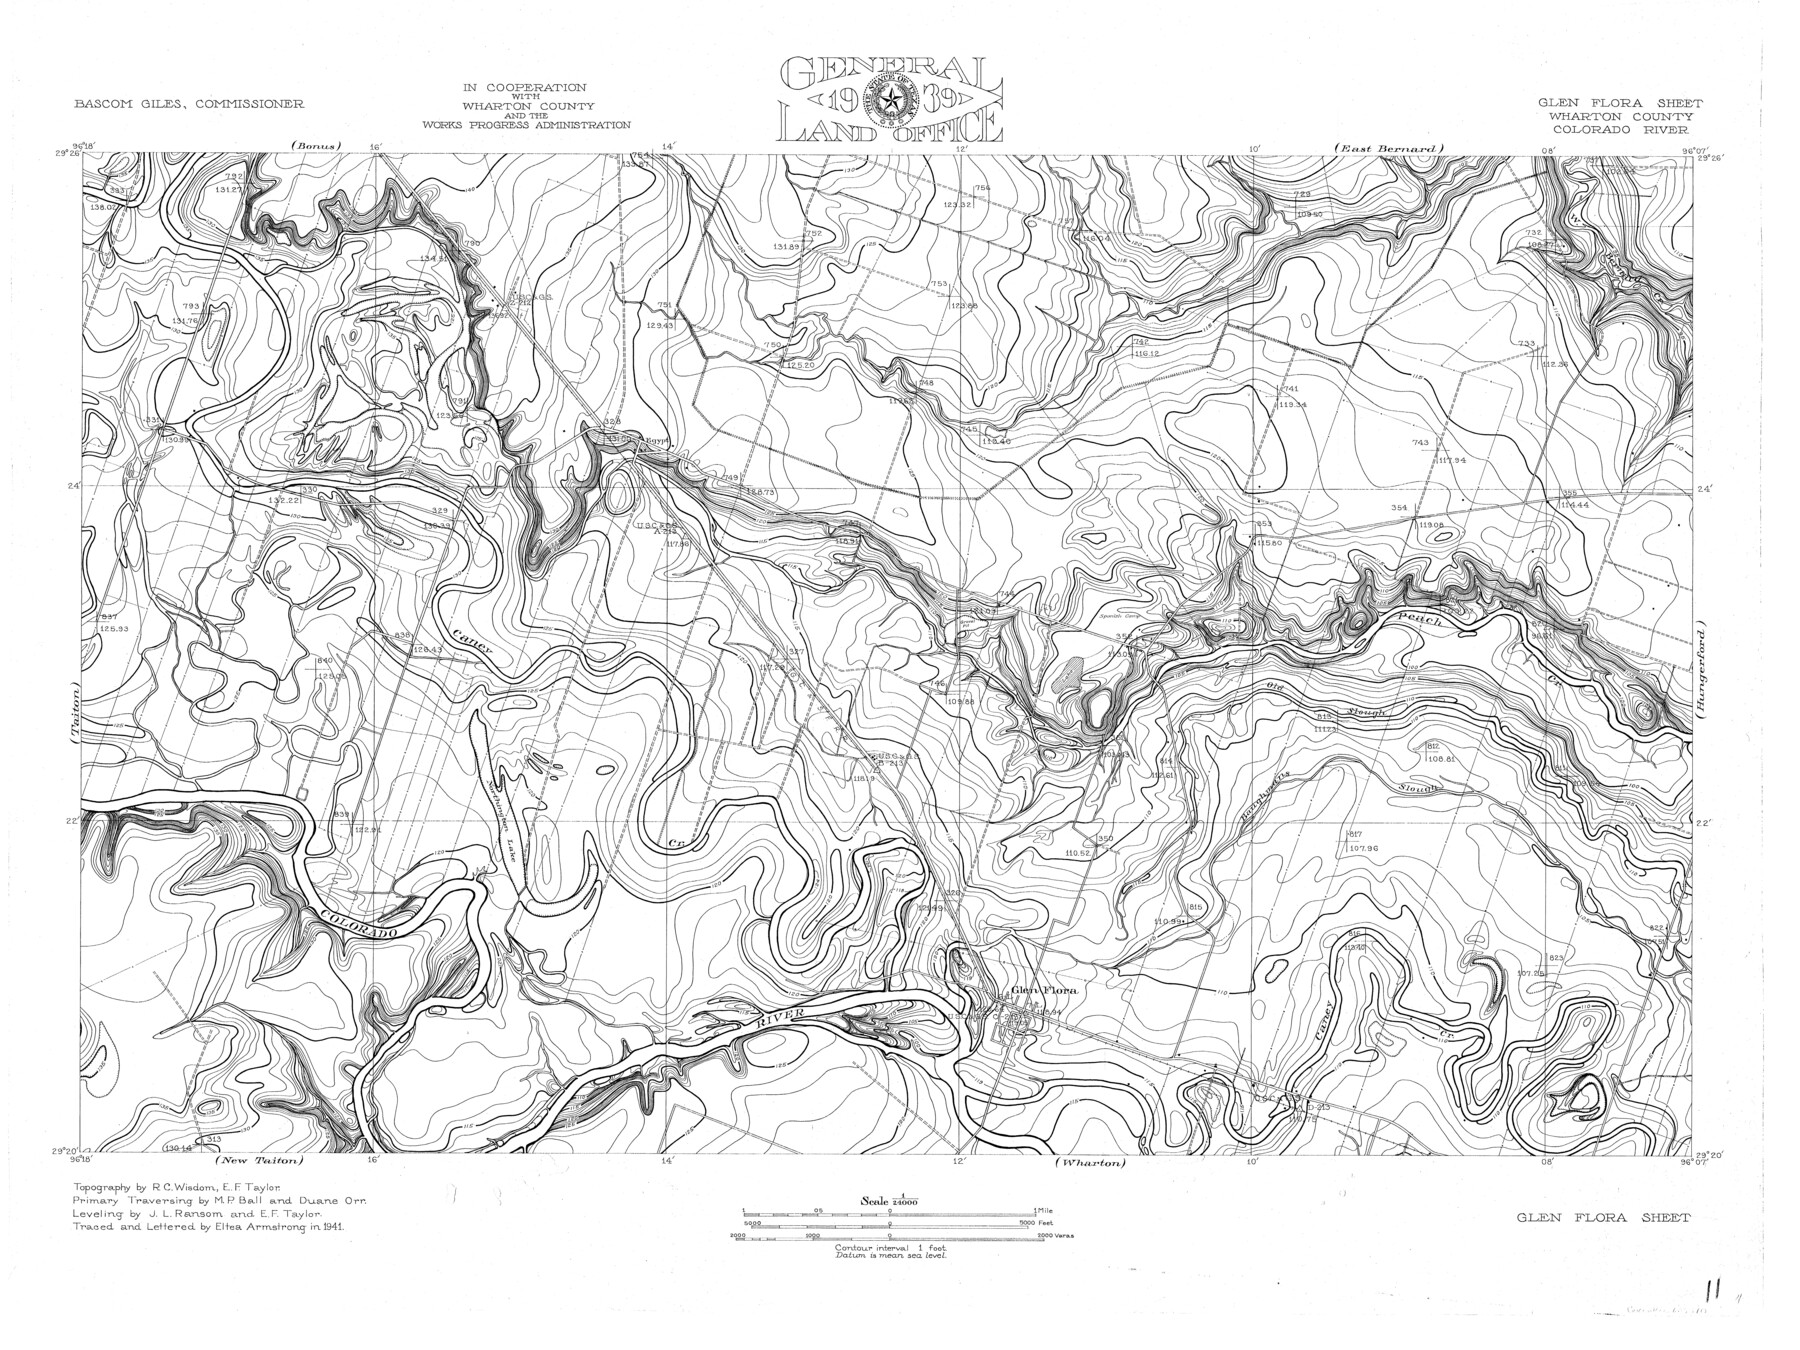 65310, Colorado River, Glen Flora Sheet, General Map Collection